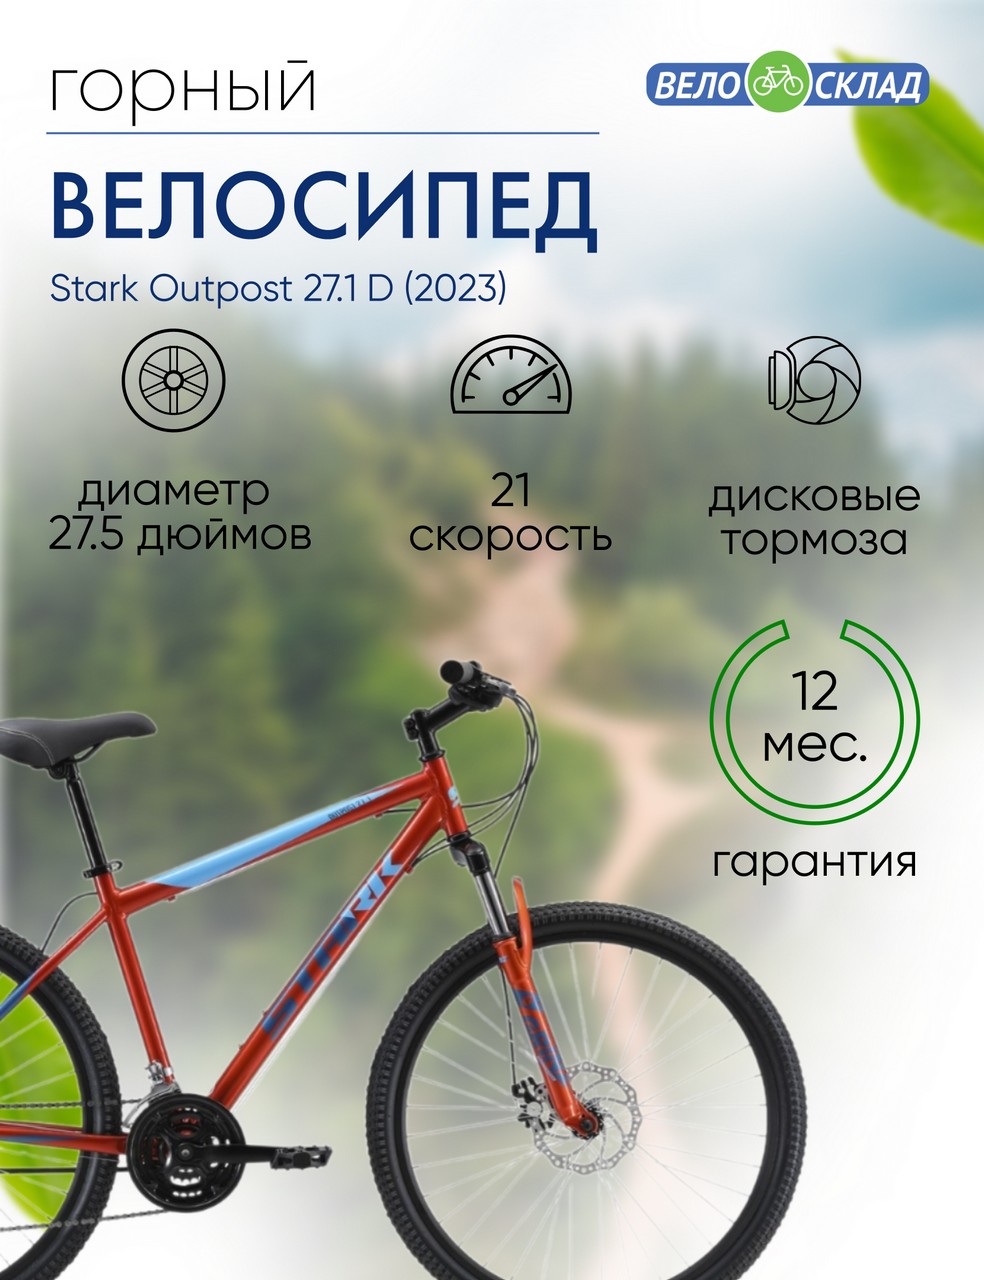 Горный велосипед Stark Outpost 27.1 D, год 2023, цвет Оранжевый-Голубой, ростовка 20